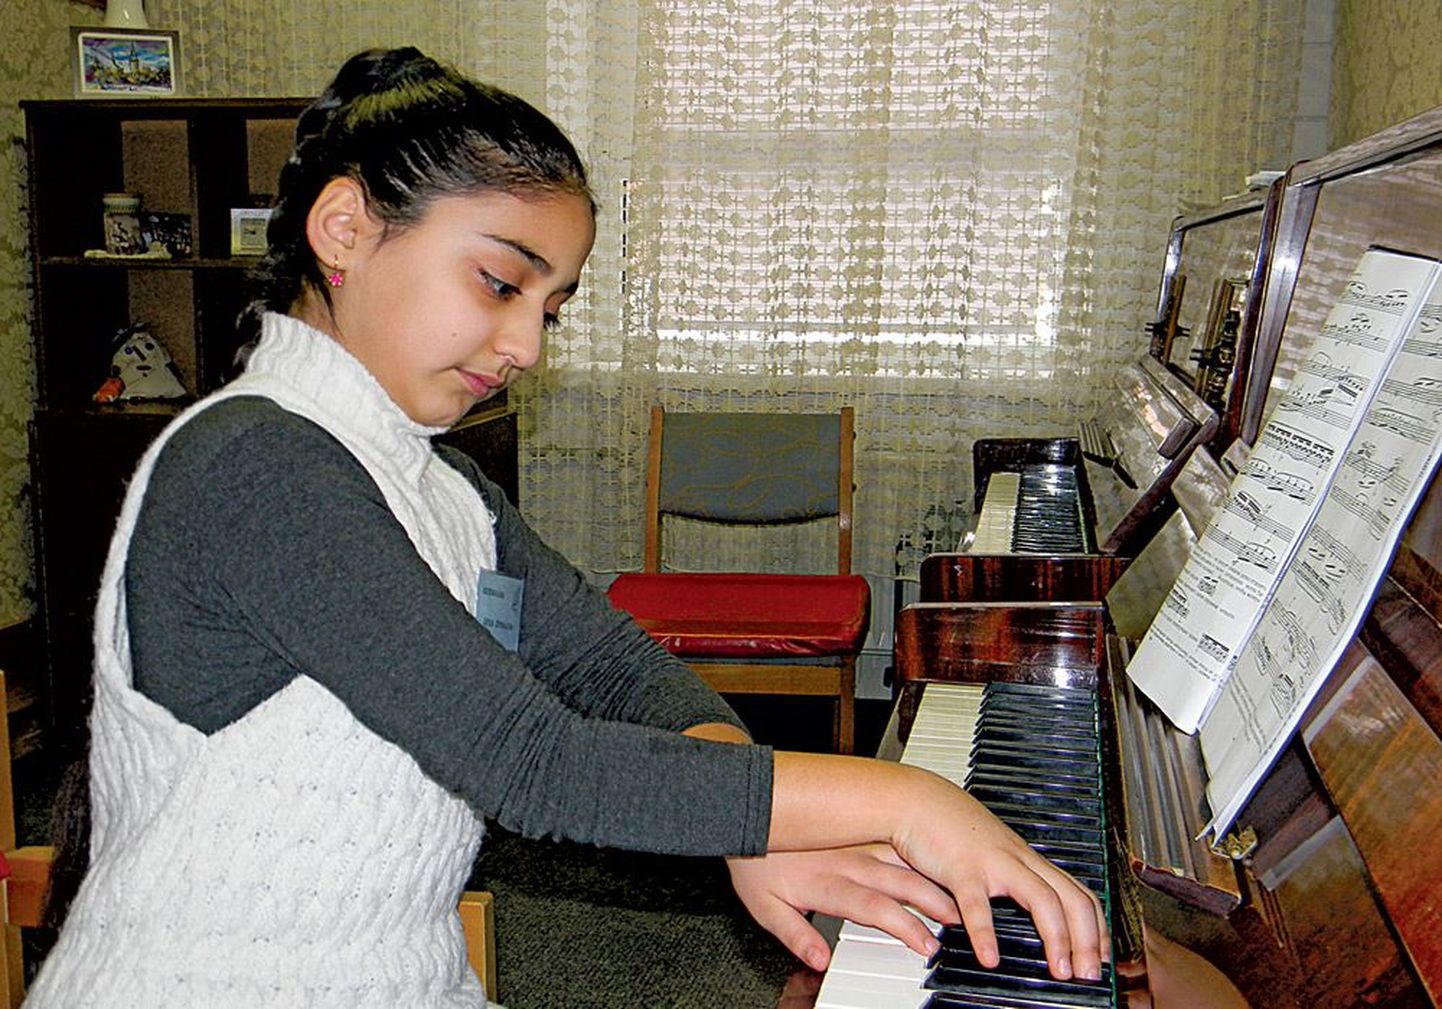 Юная пианистка из Азербайджана Лейла Зейналова готовится к выступлению в первом туре конкурса.